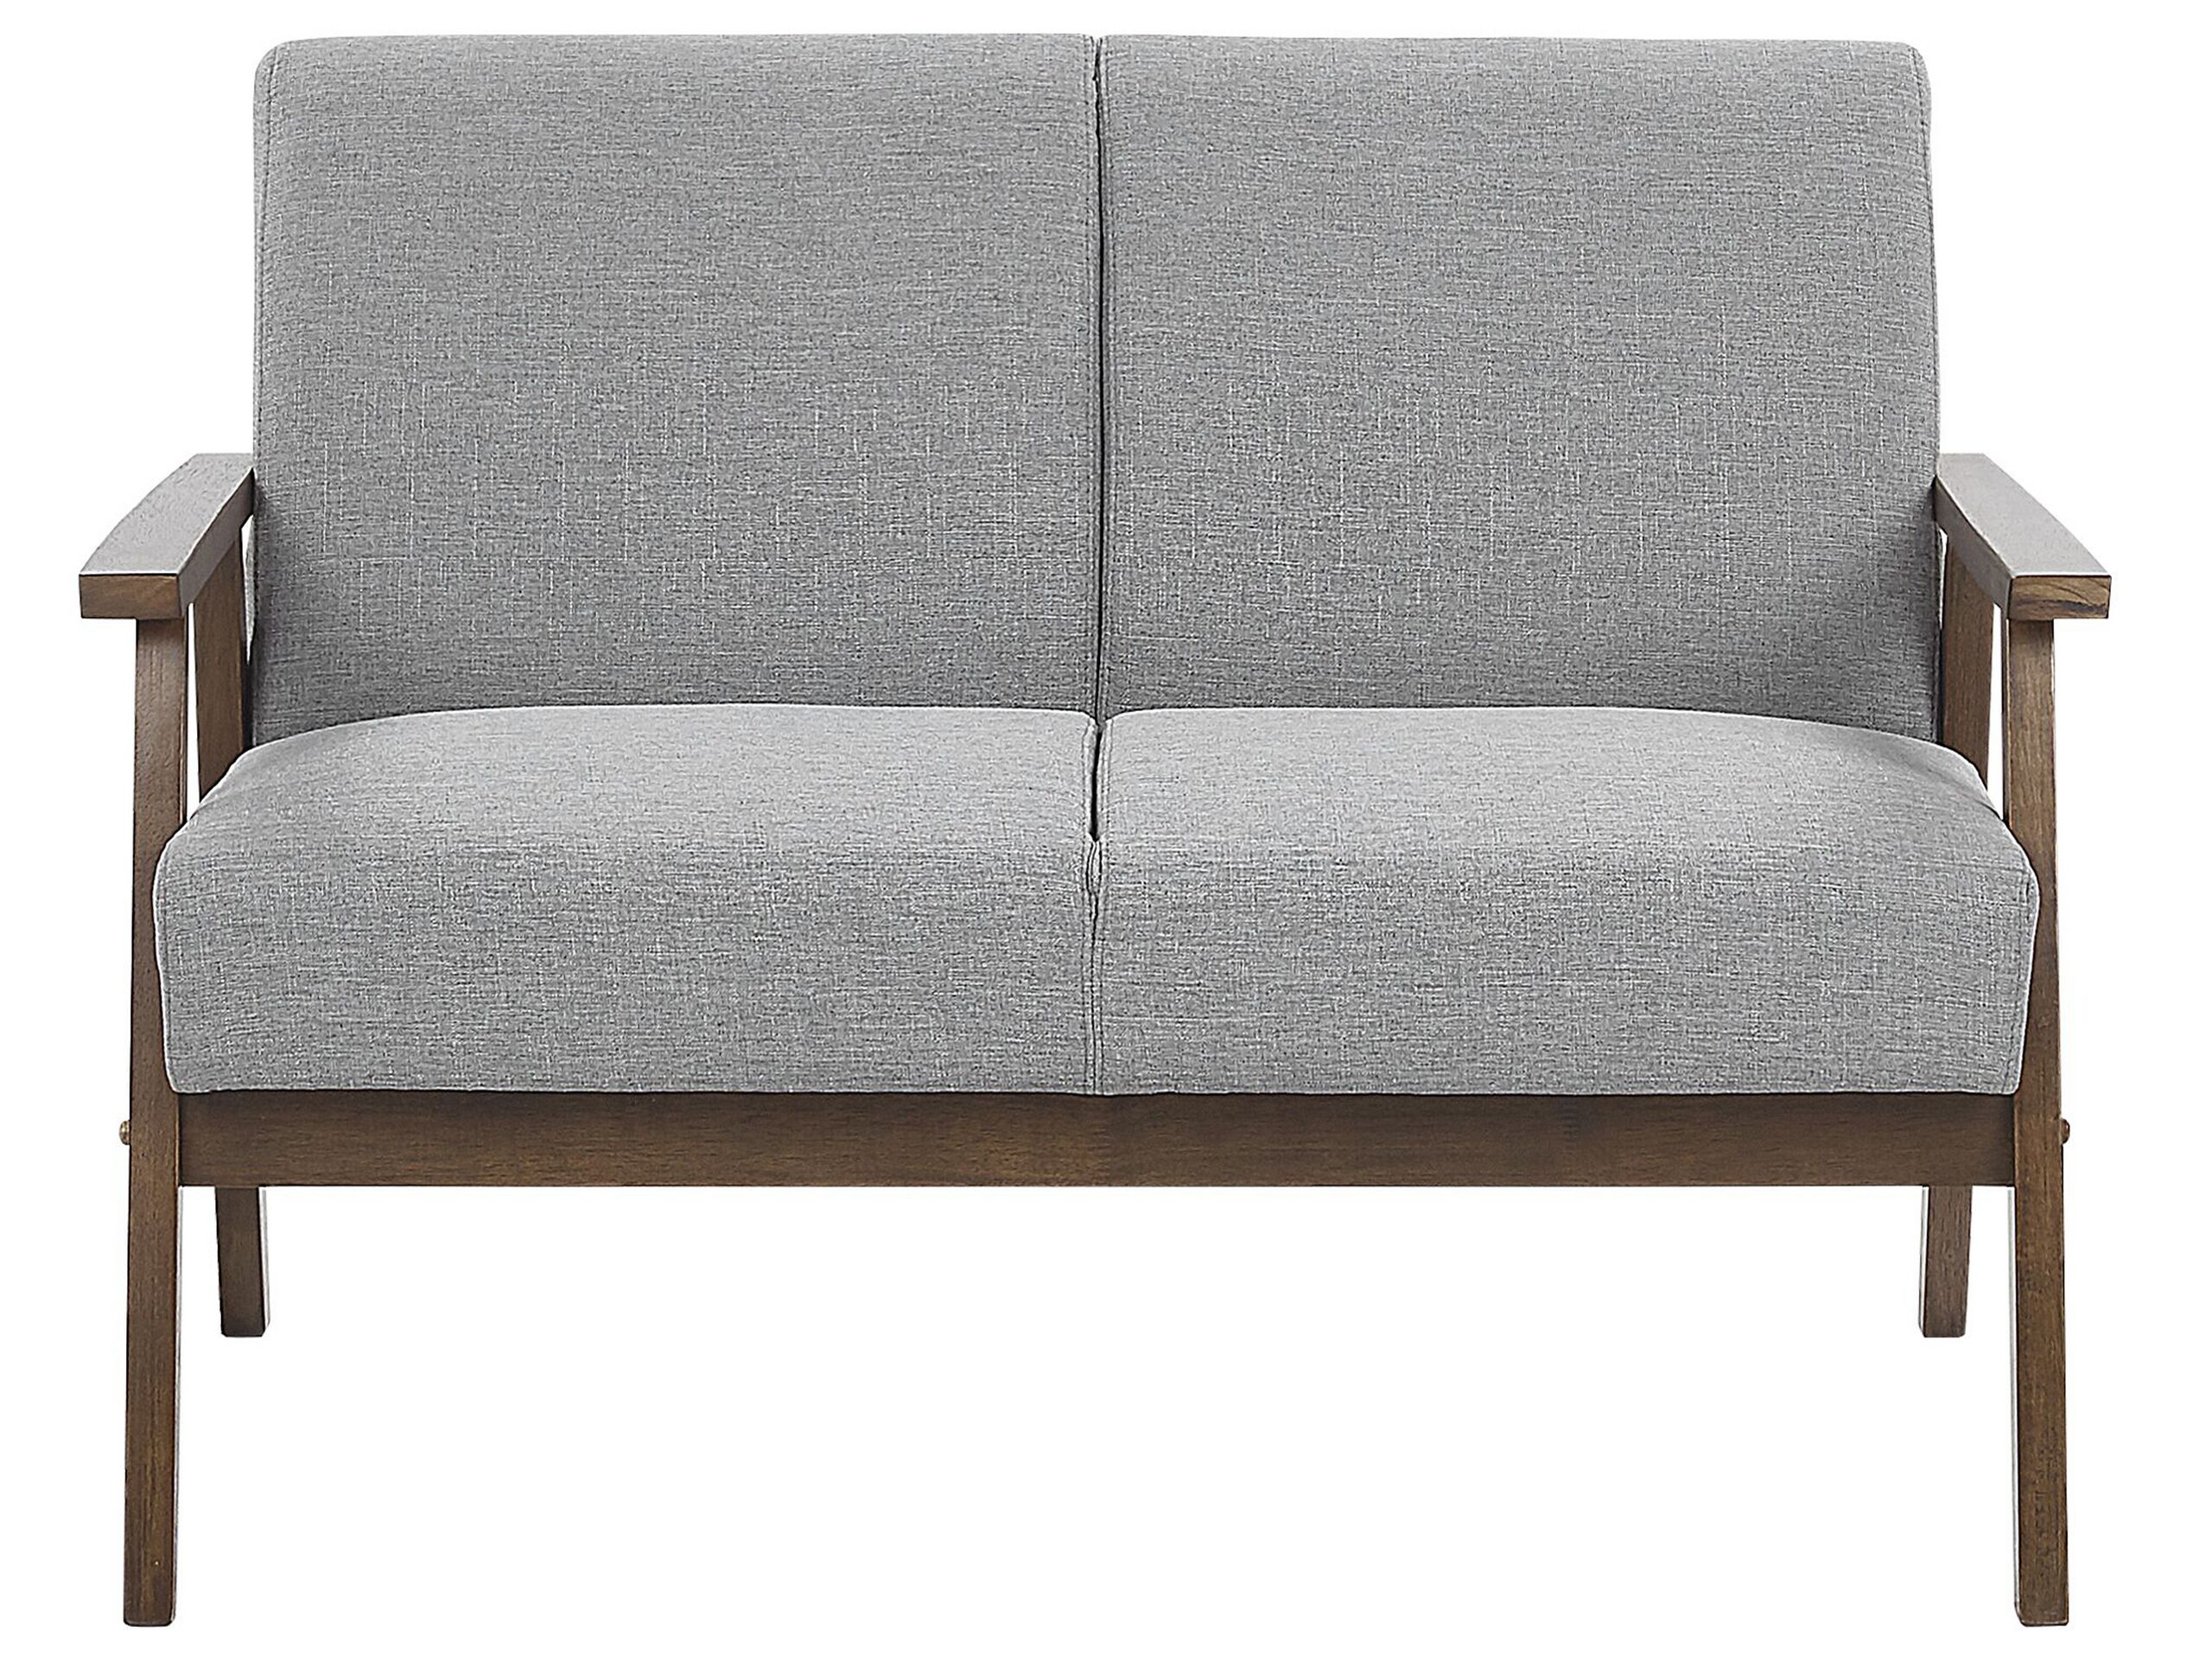 Canapé 2 places 2 personnes en polyester gris